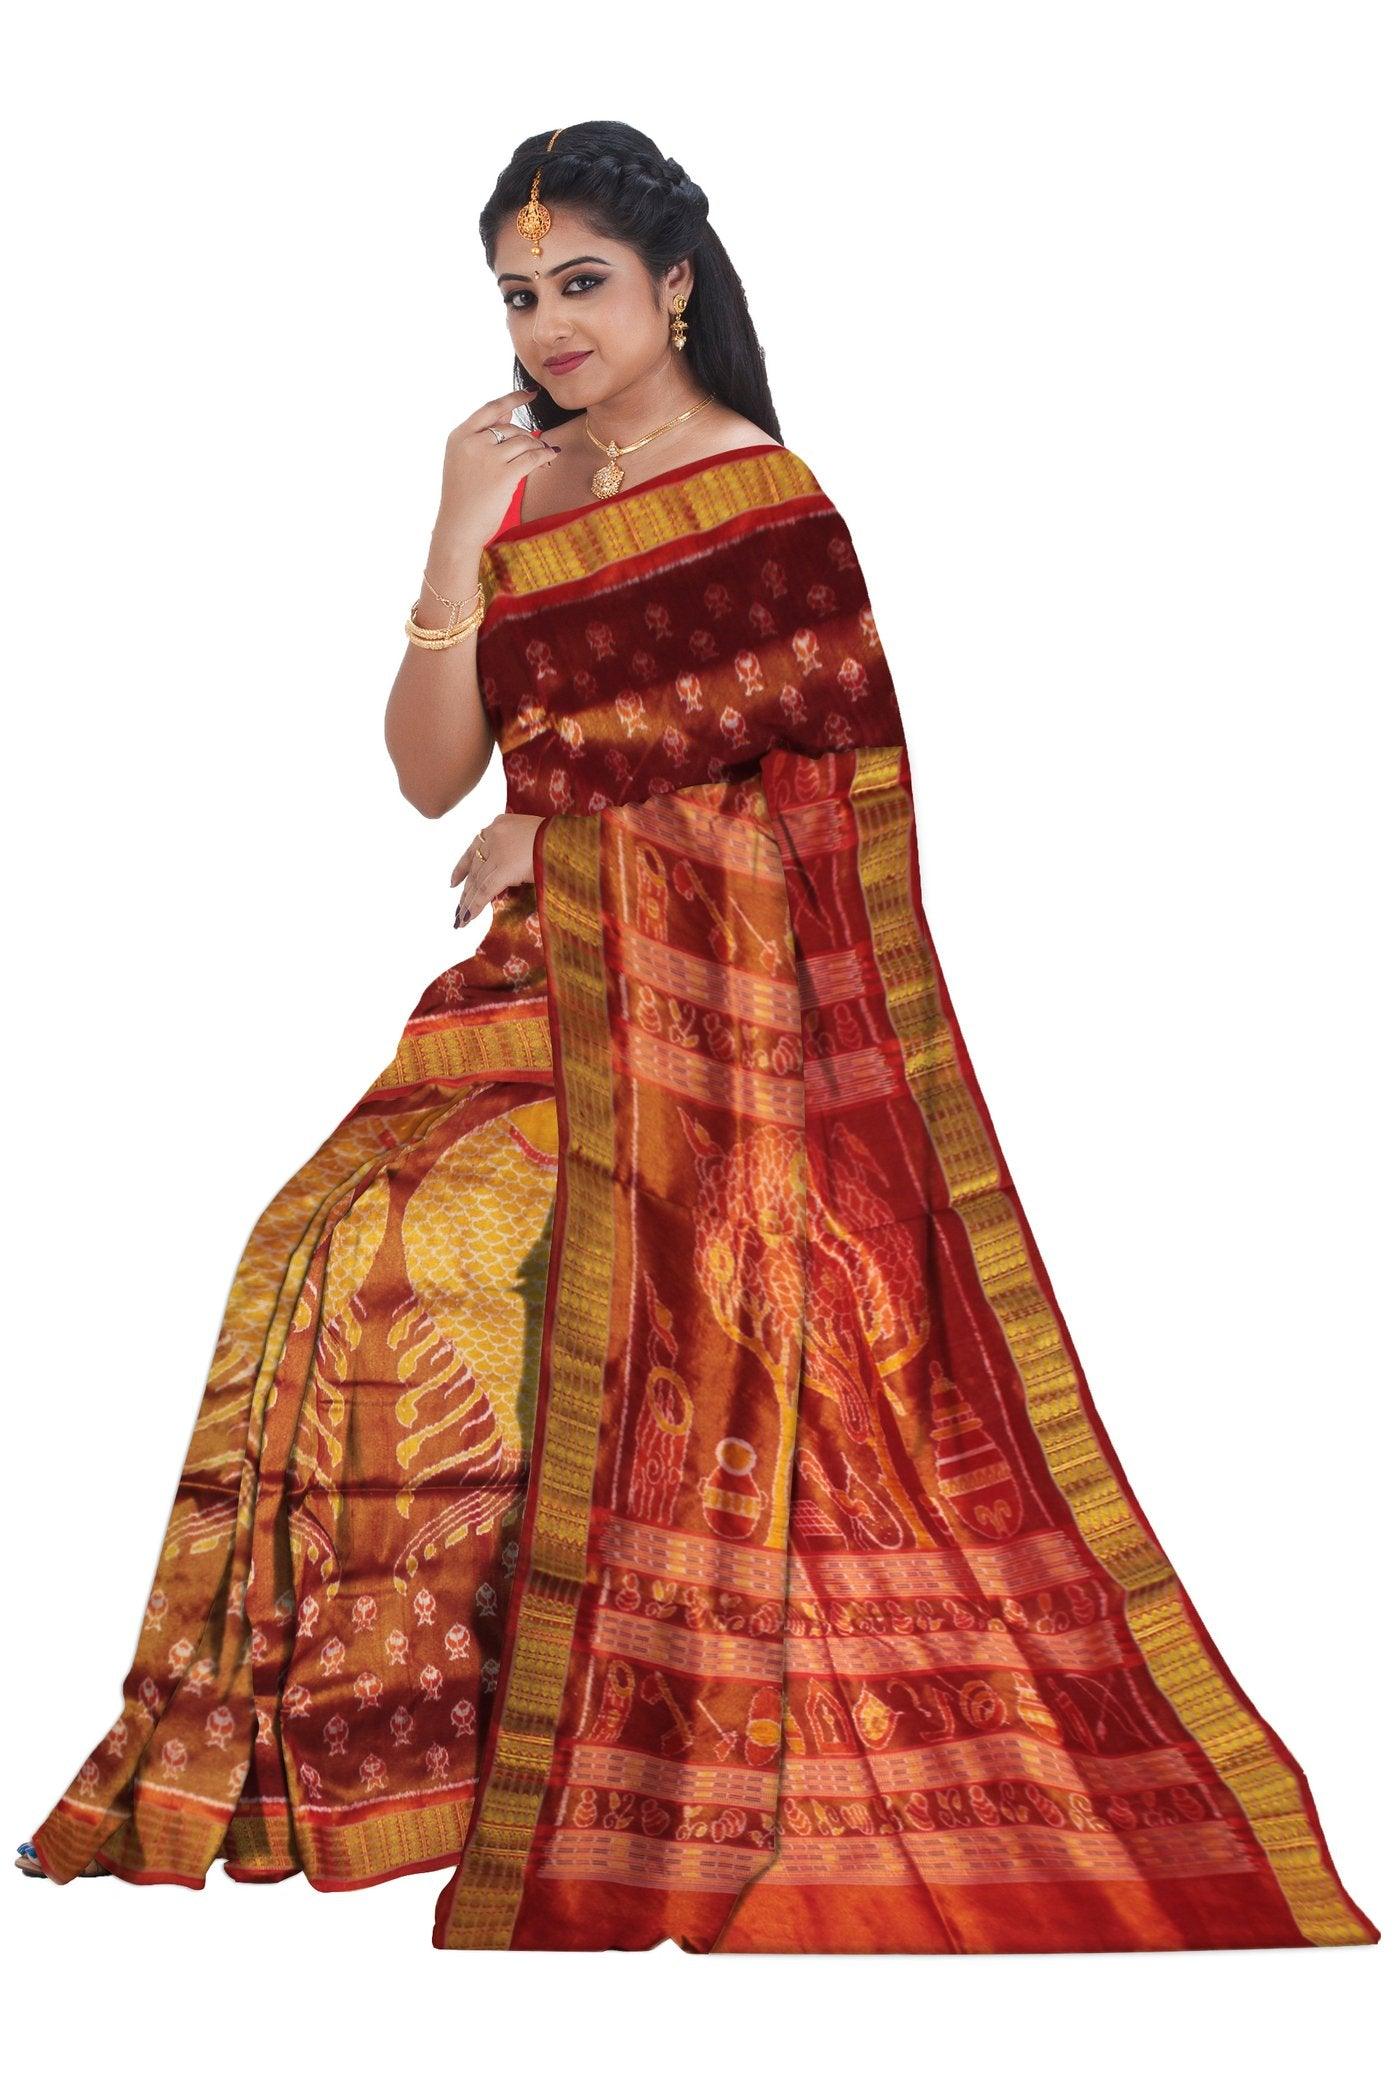 Sonepur Tissue Silk Sarees - Koshali Arts & Crafts Enterprise